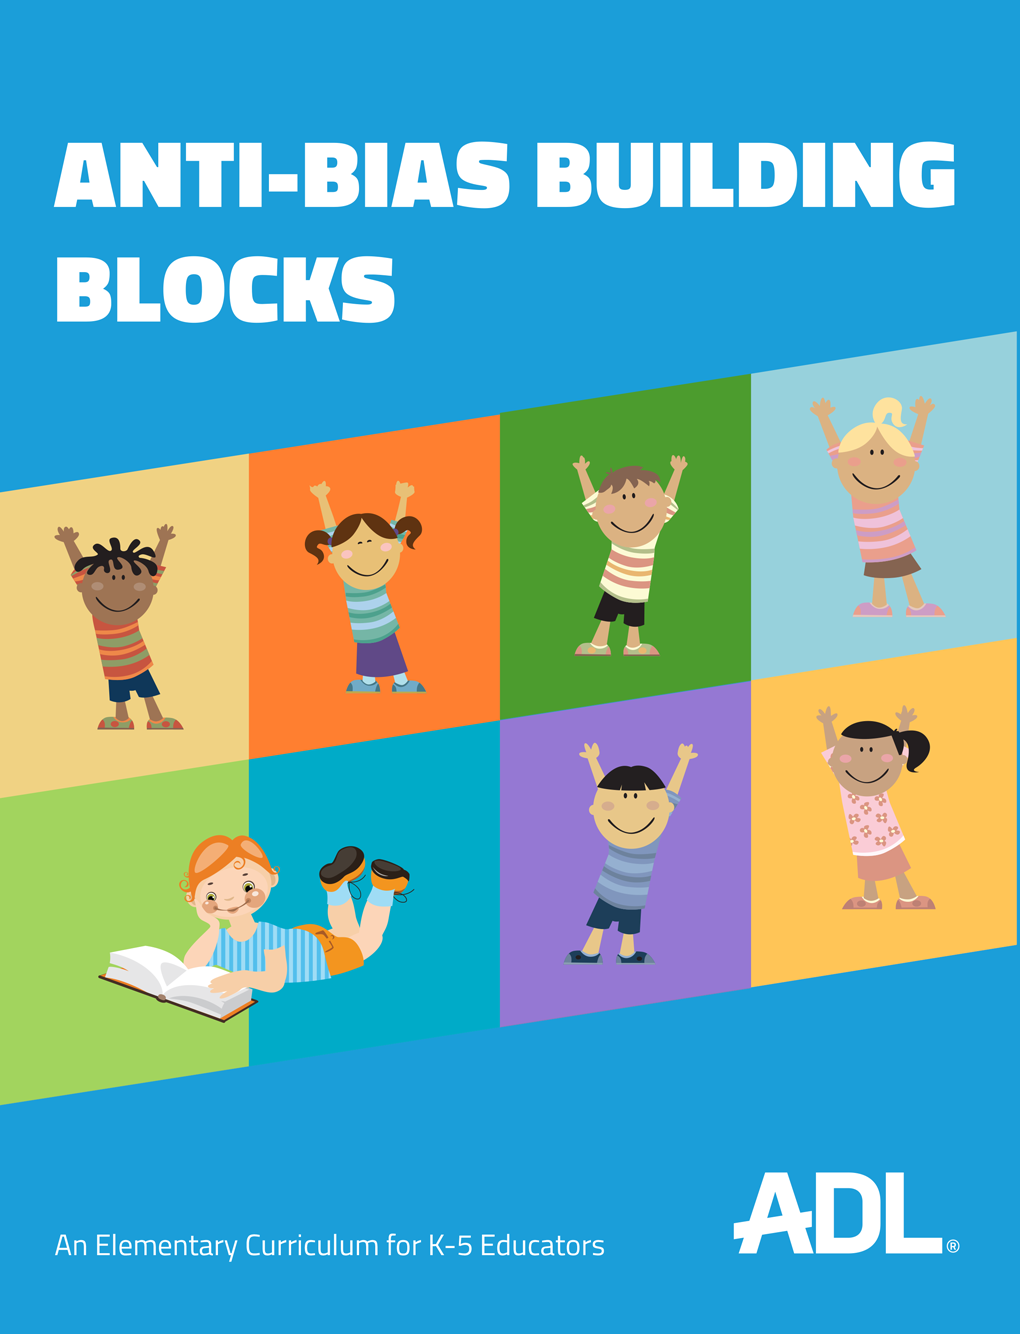 Anti-Bias Building Blocks Curriculum Image